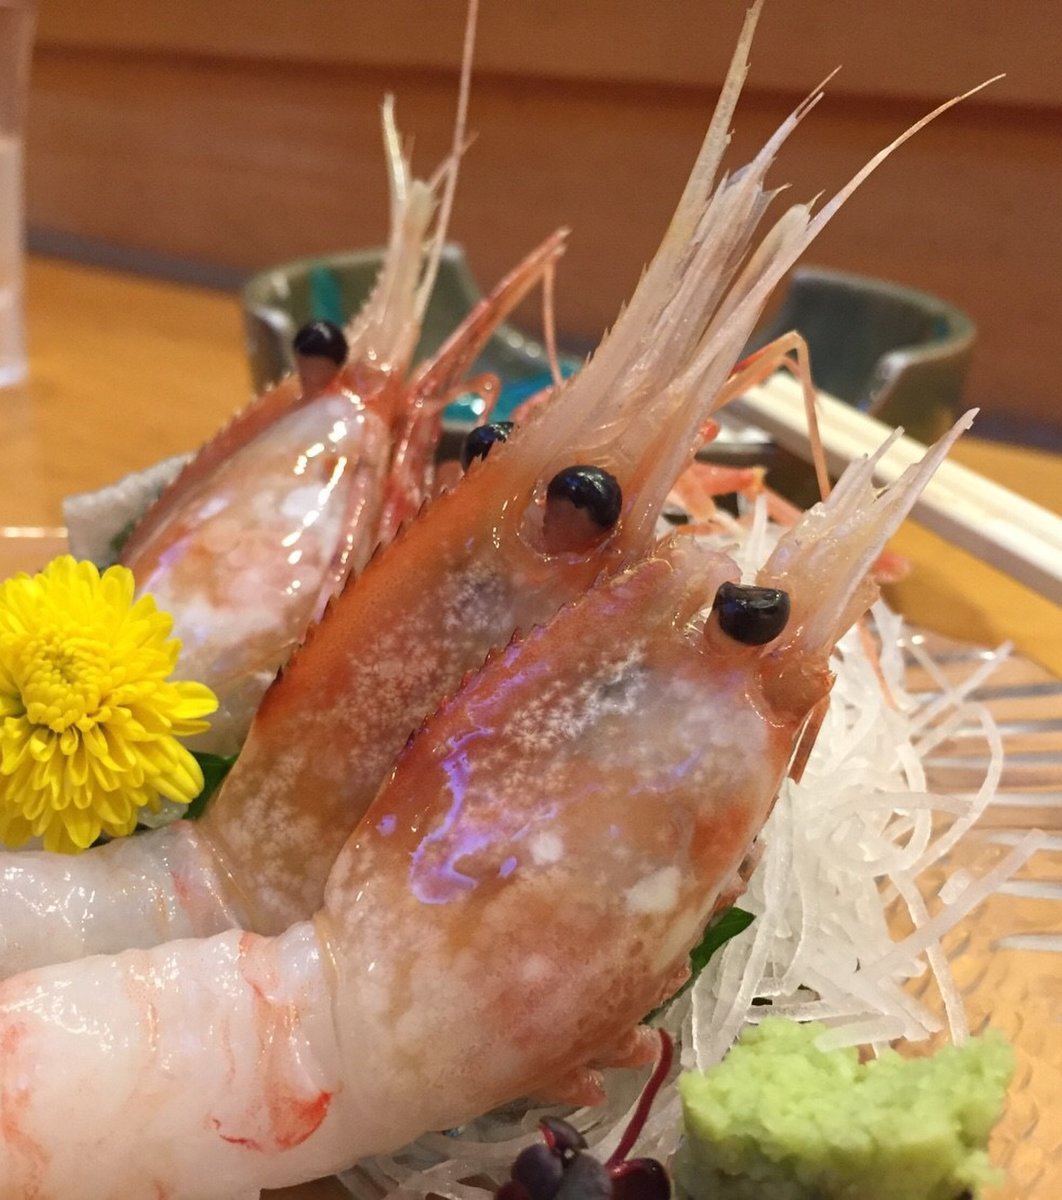 魚ごころ 季魚喜人 本店